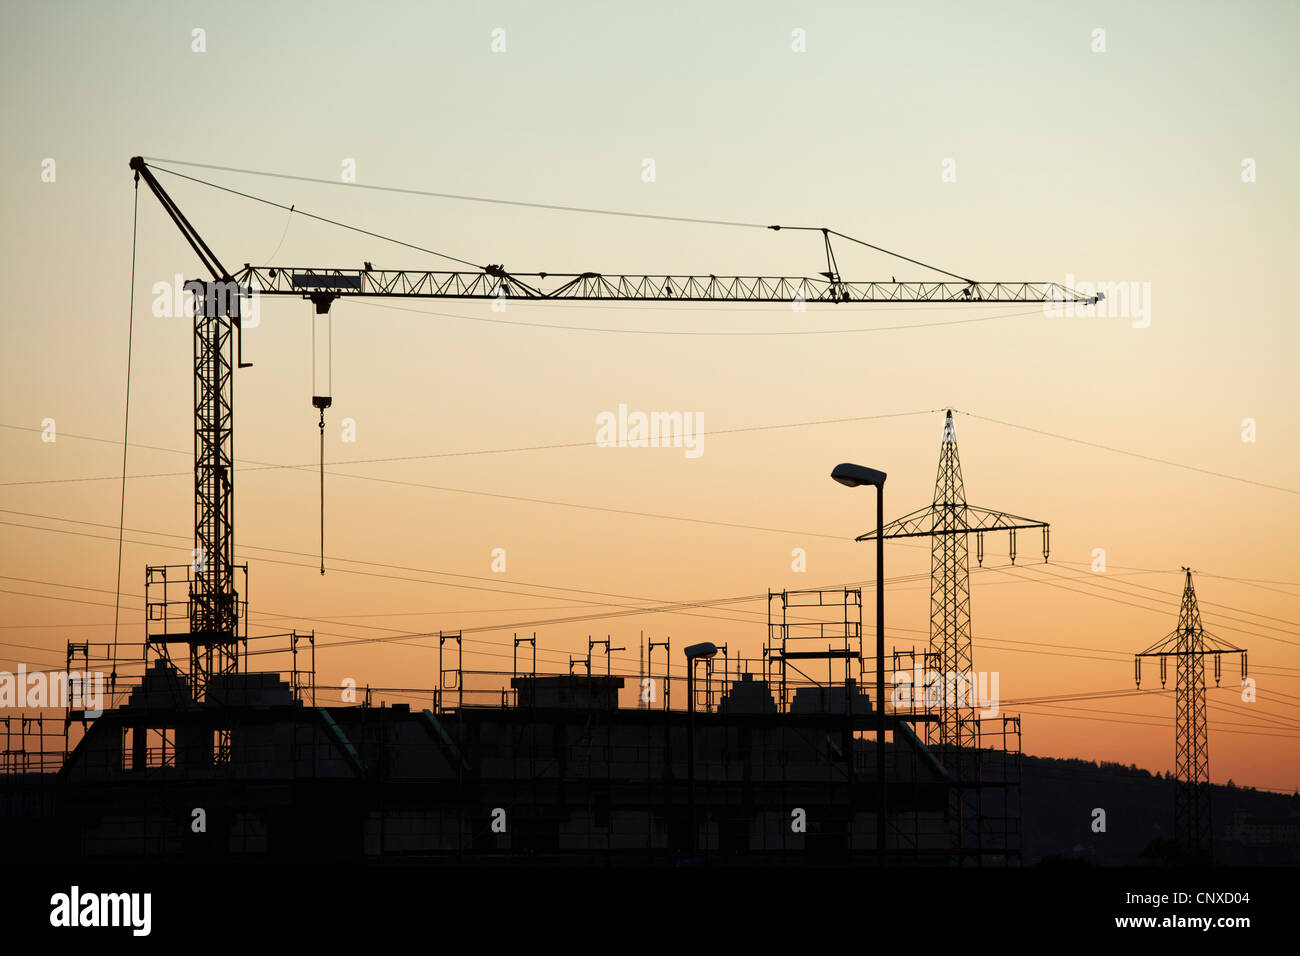 Ein Bau Kran und Elektrizität Masten Silhouette gegen Sonnenuntergang Himmel Stockfoto